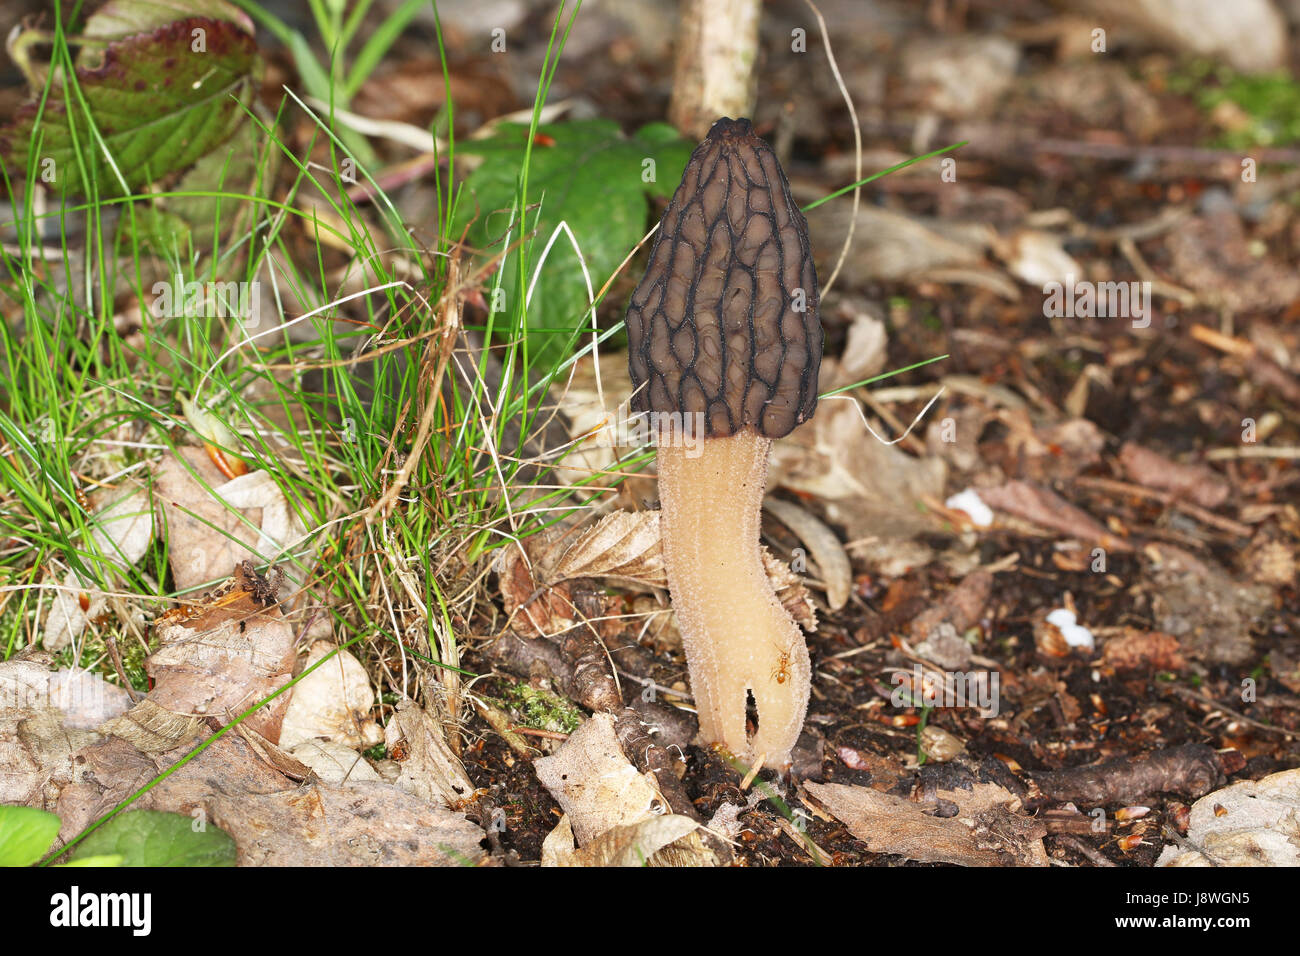 Delicious edible mushroom morel (Morchella) in nature Stock Photo